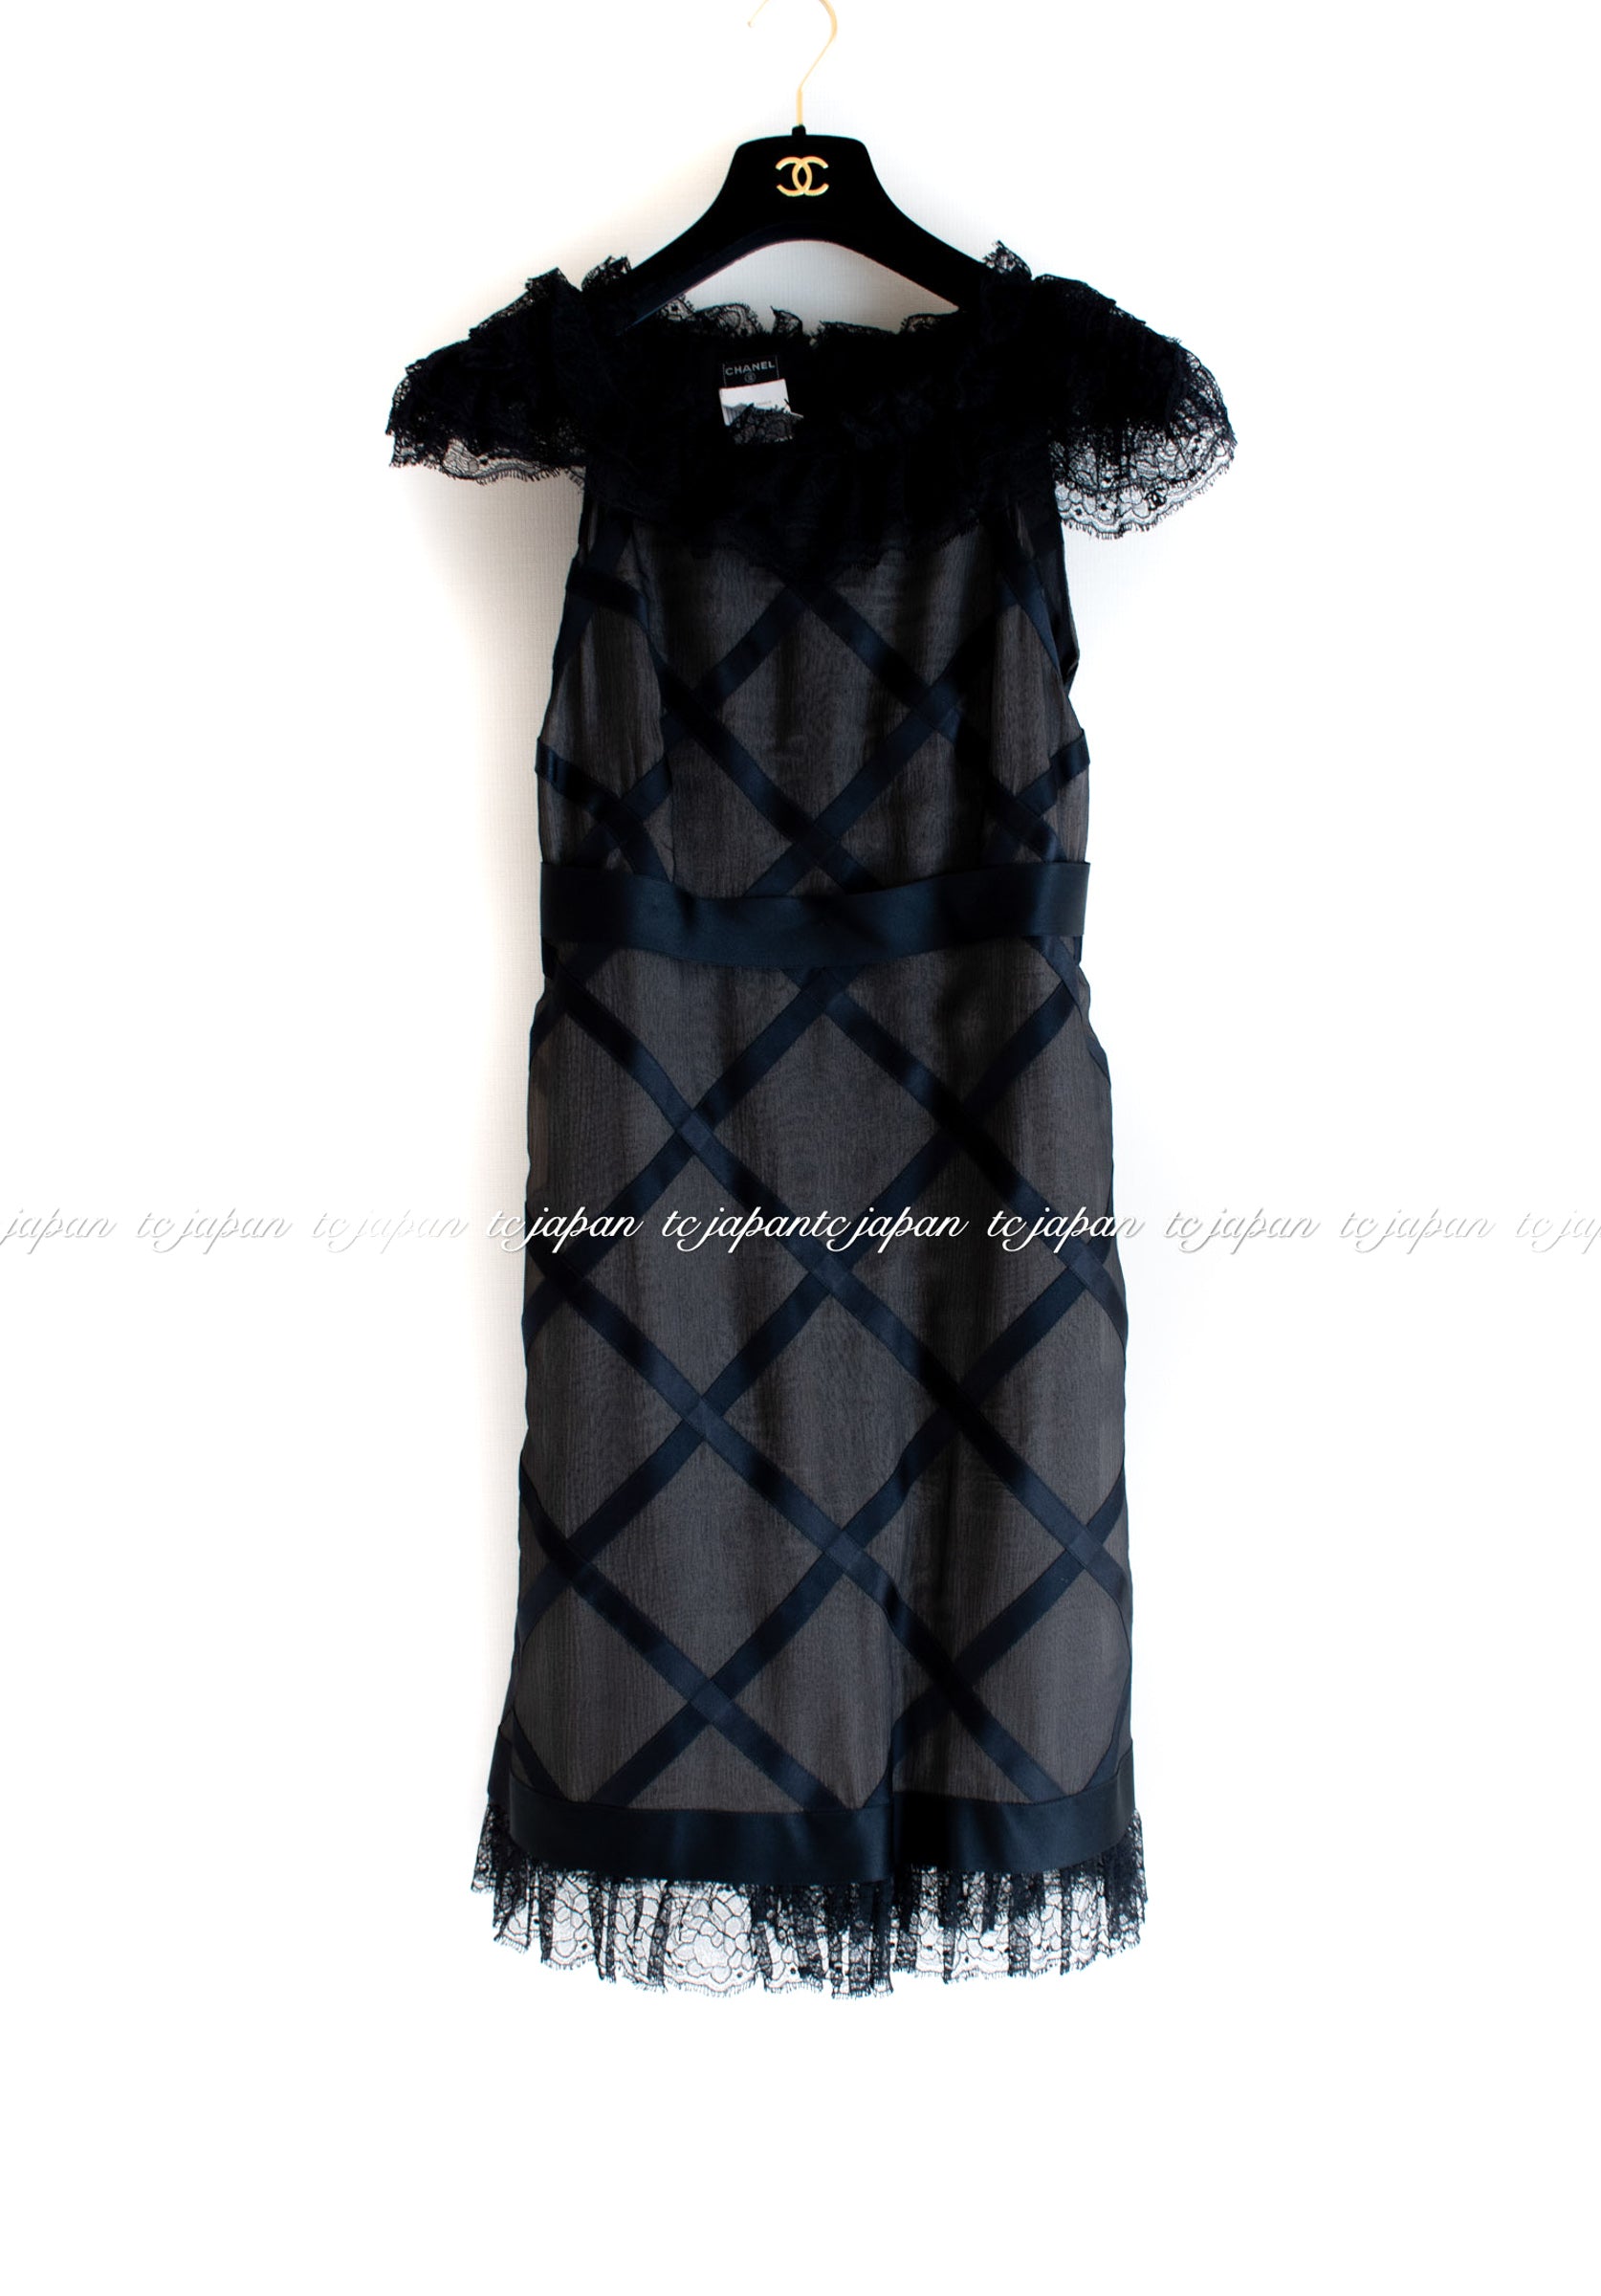 CHANEL 07S Black Ribbon Trim Silk Dress 38 40 シャネル ブラック・シルクワンピース 即発